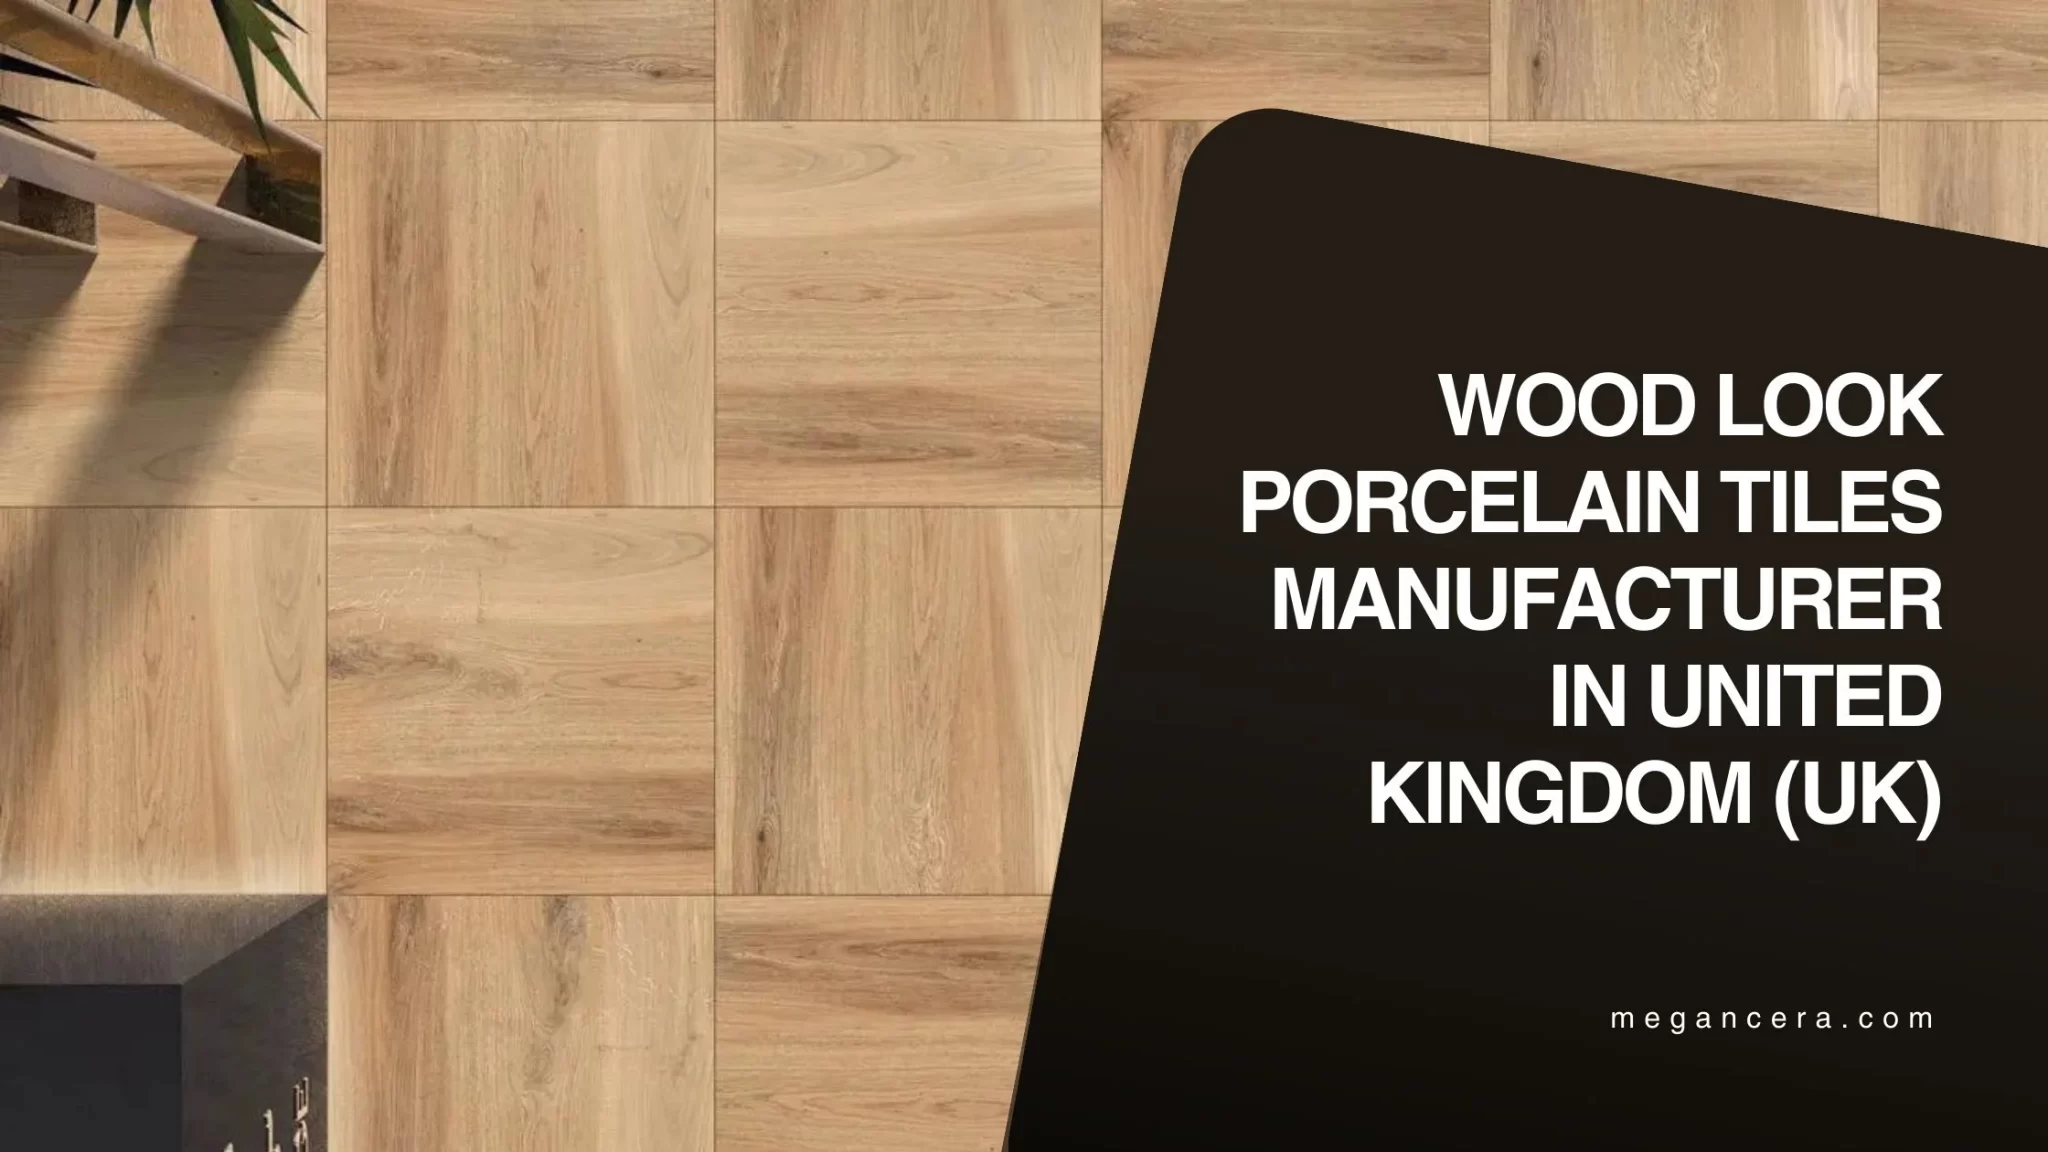 Wood Look Porcelain Tiles Manufacturer in United Kingdom (UK)